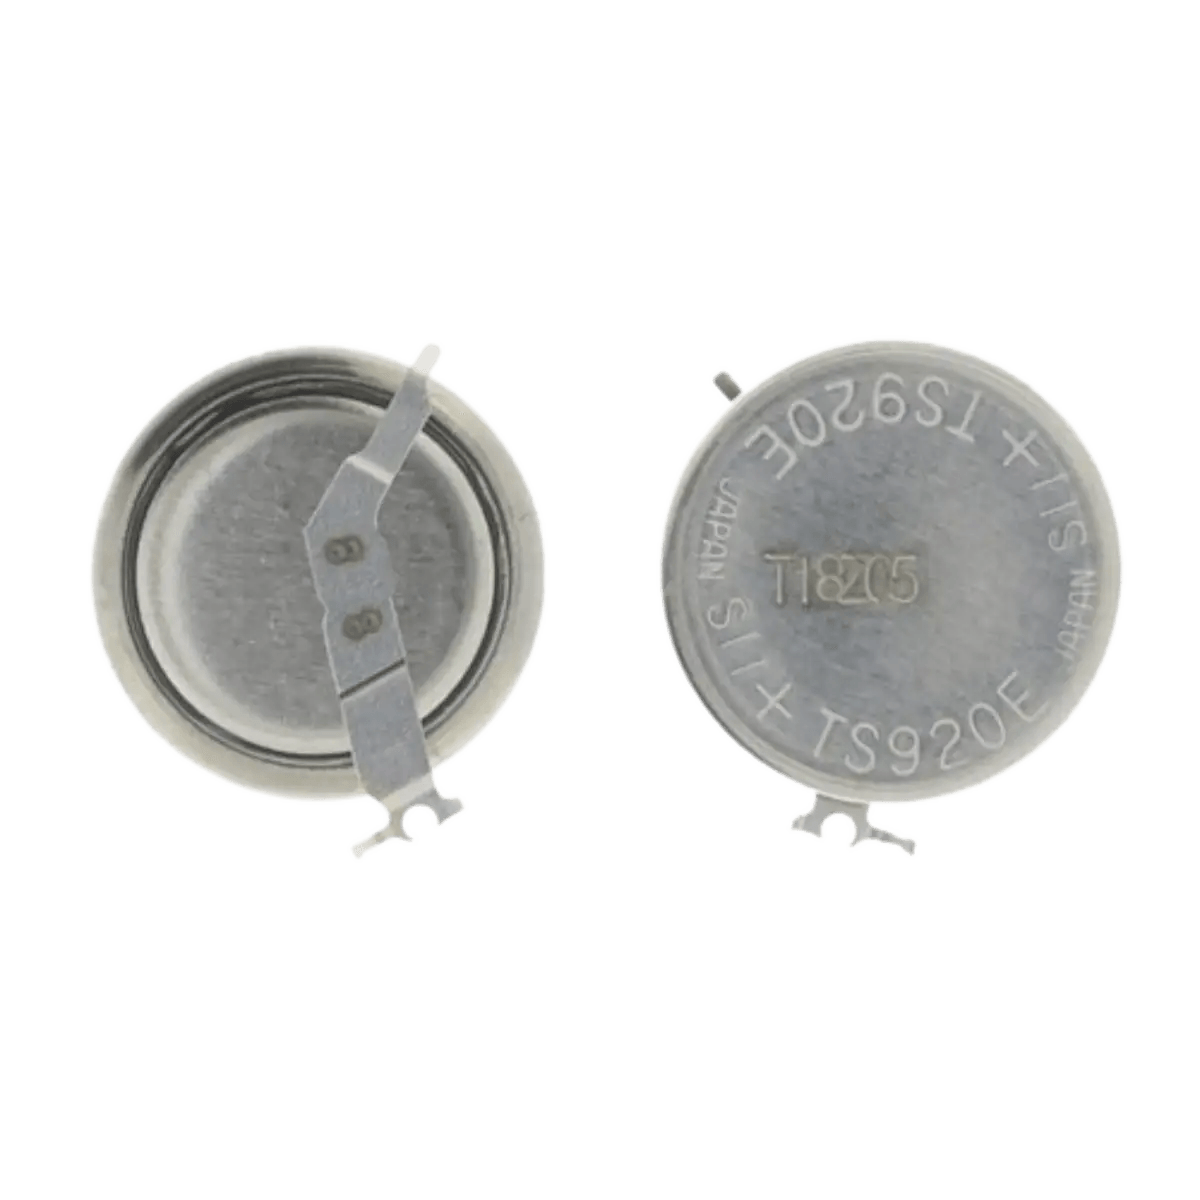 Batterie pour montre Seiko TS920E originale 3023-34R